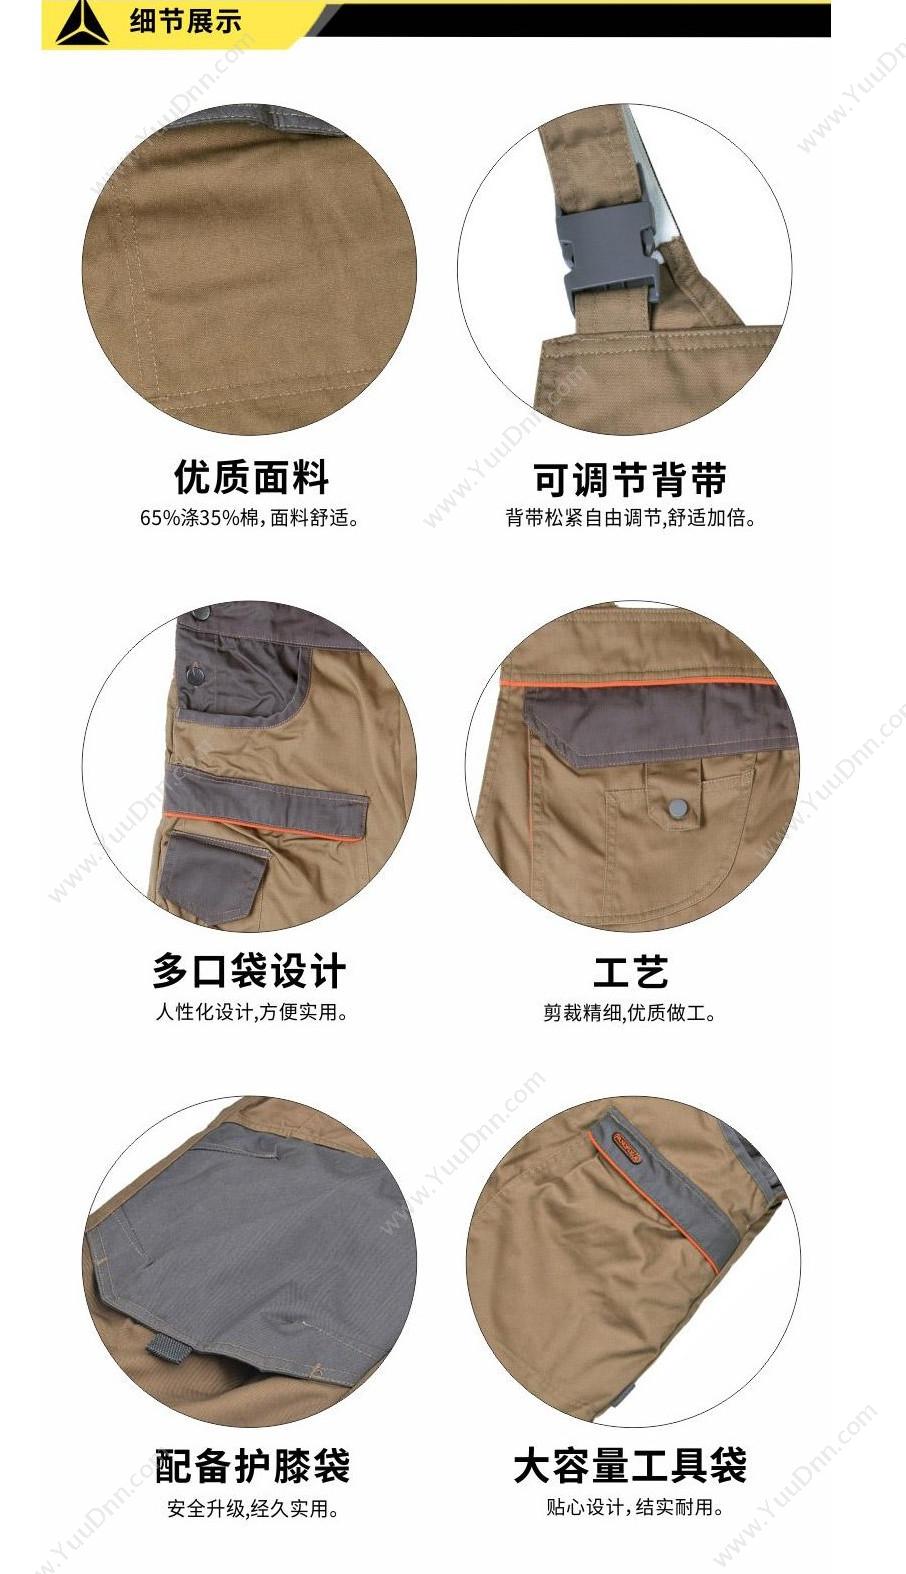 代尔塔 Delta 405348 马克企业系列背带裤 MCSAL/L（藏青） 背带裤